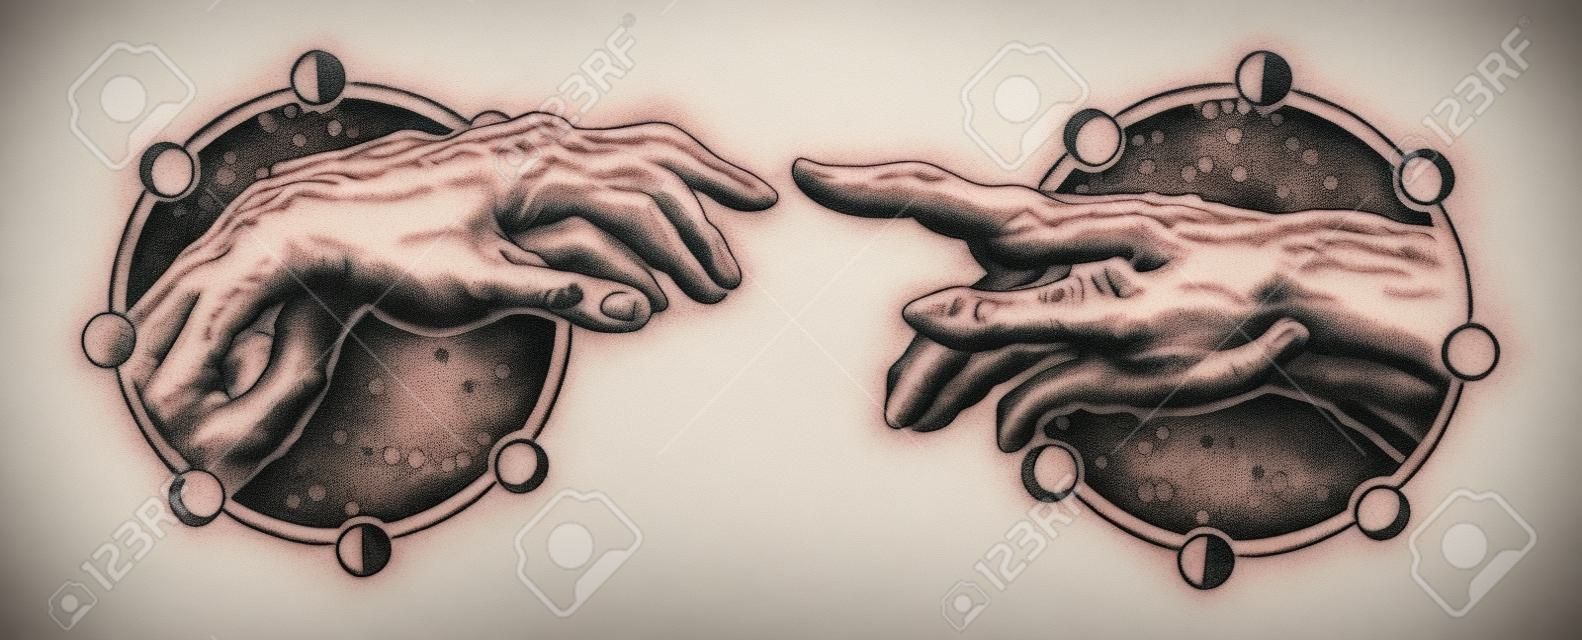 Michelangelo Tanrının dokunuşu. İnsan elleri parmak dövmesi ve t-shirt tasarımı ile dokunuyor. Eller dövme Rönesansı. Tanrı ve Adam, maneviyat, din, bağlantı ve etkileşimin sembolü